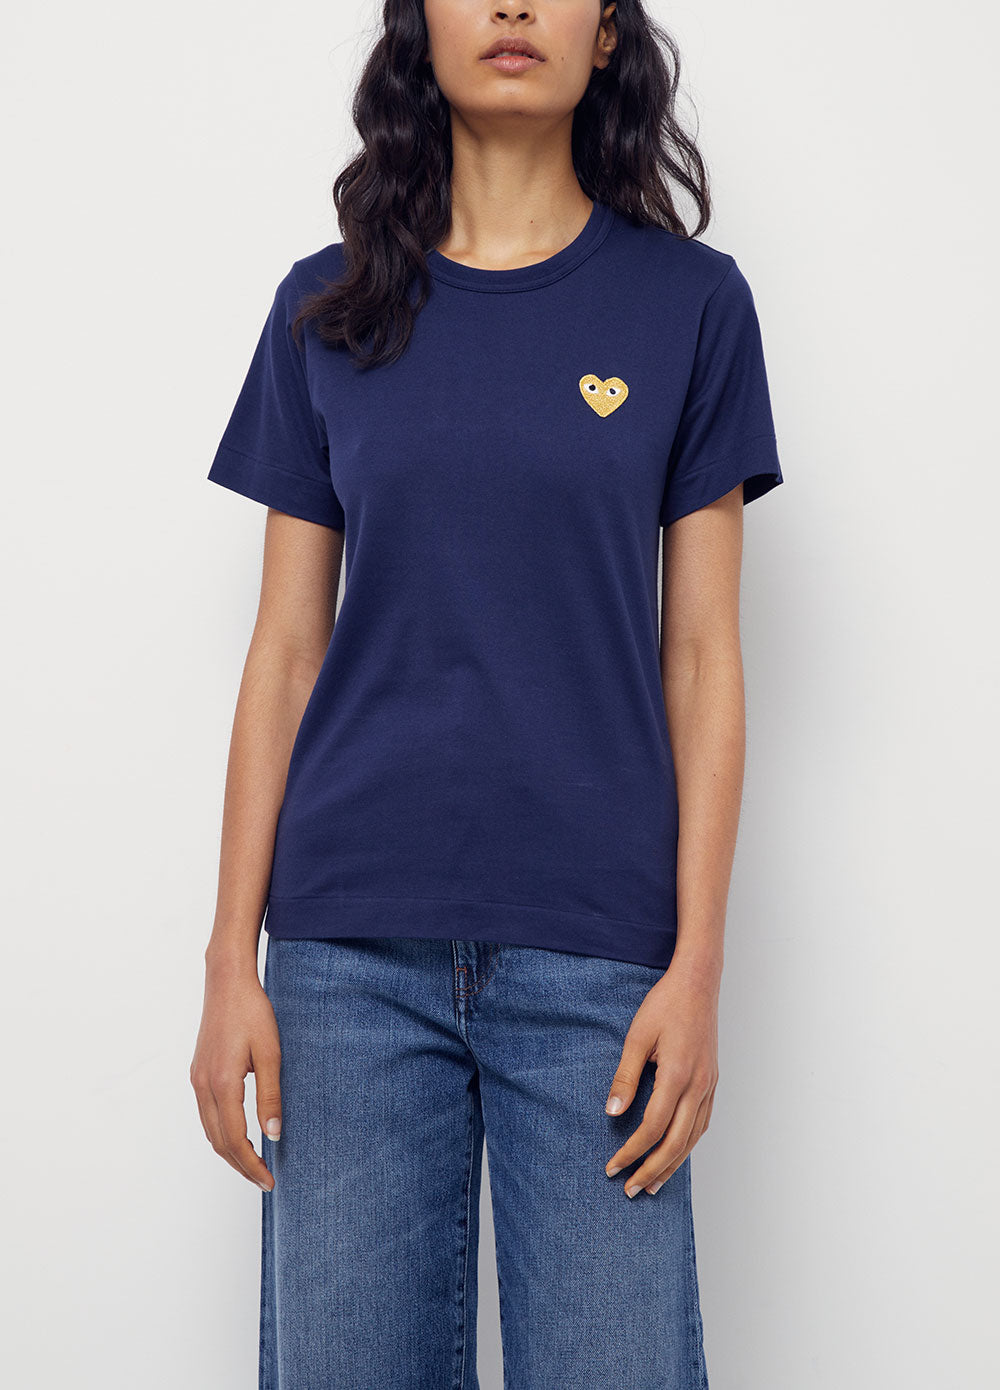 T215 Gold Heart T-shirt